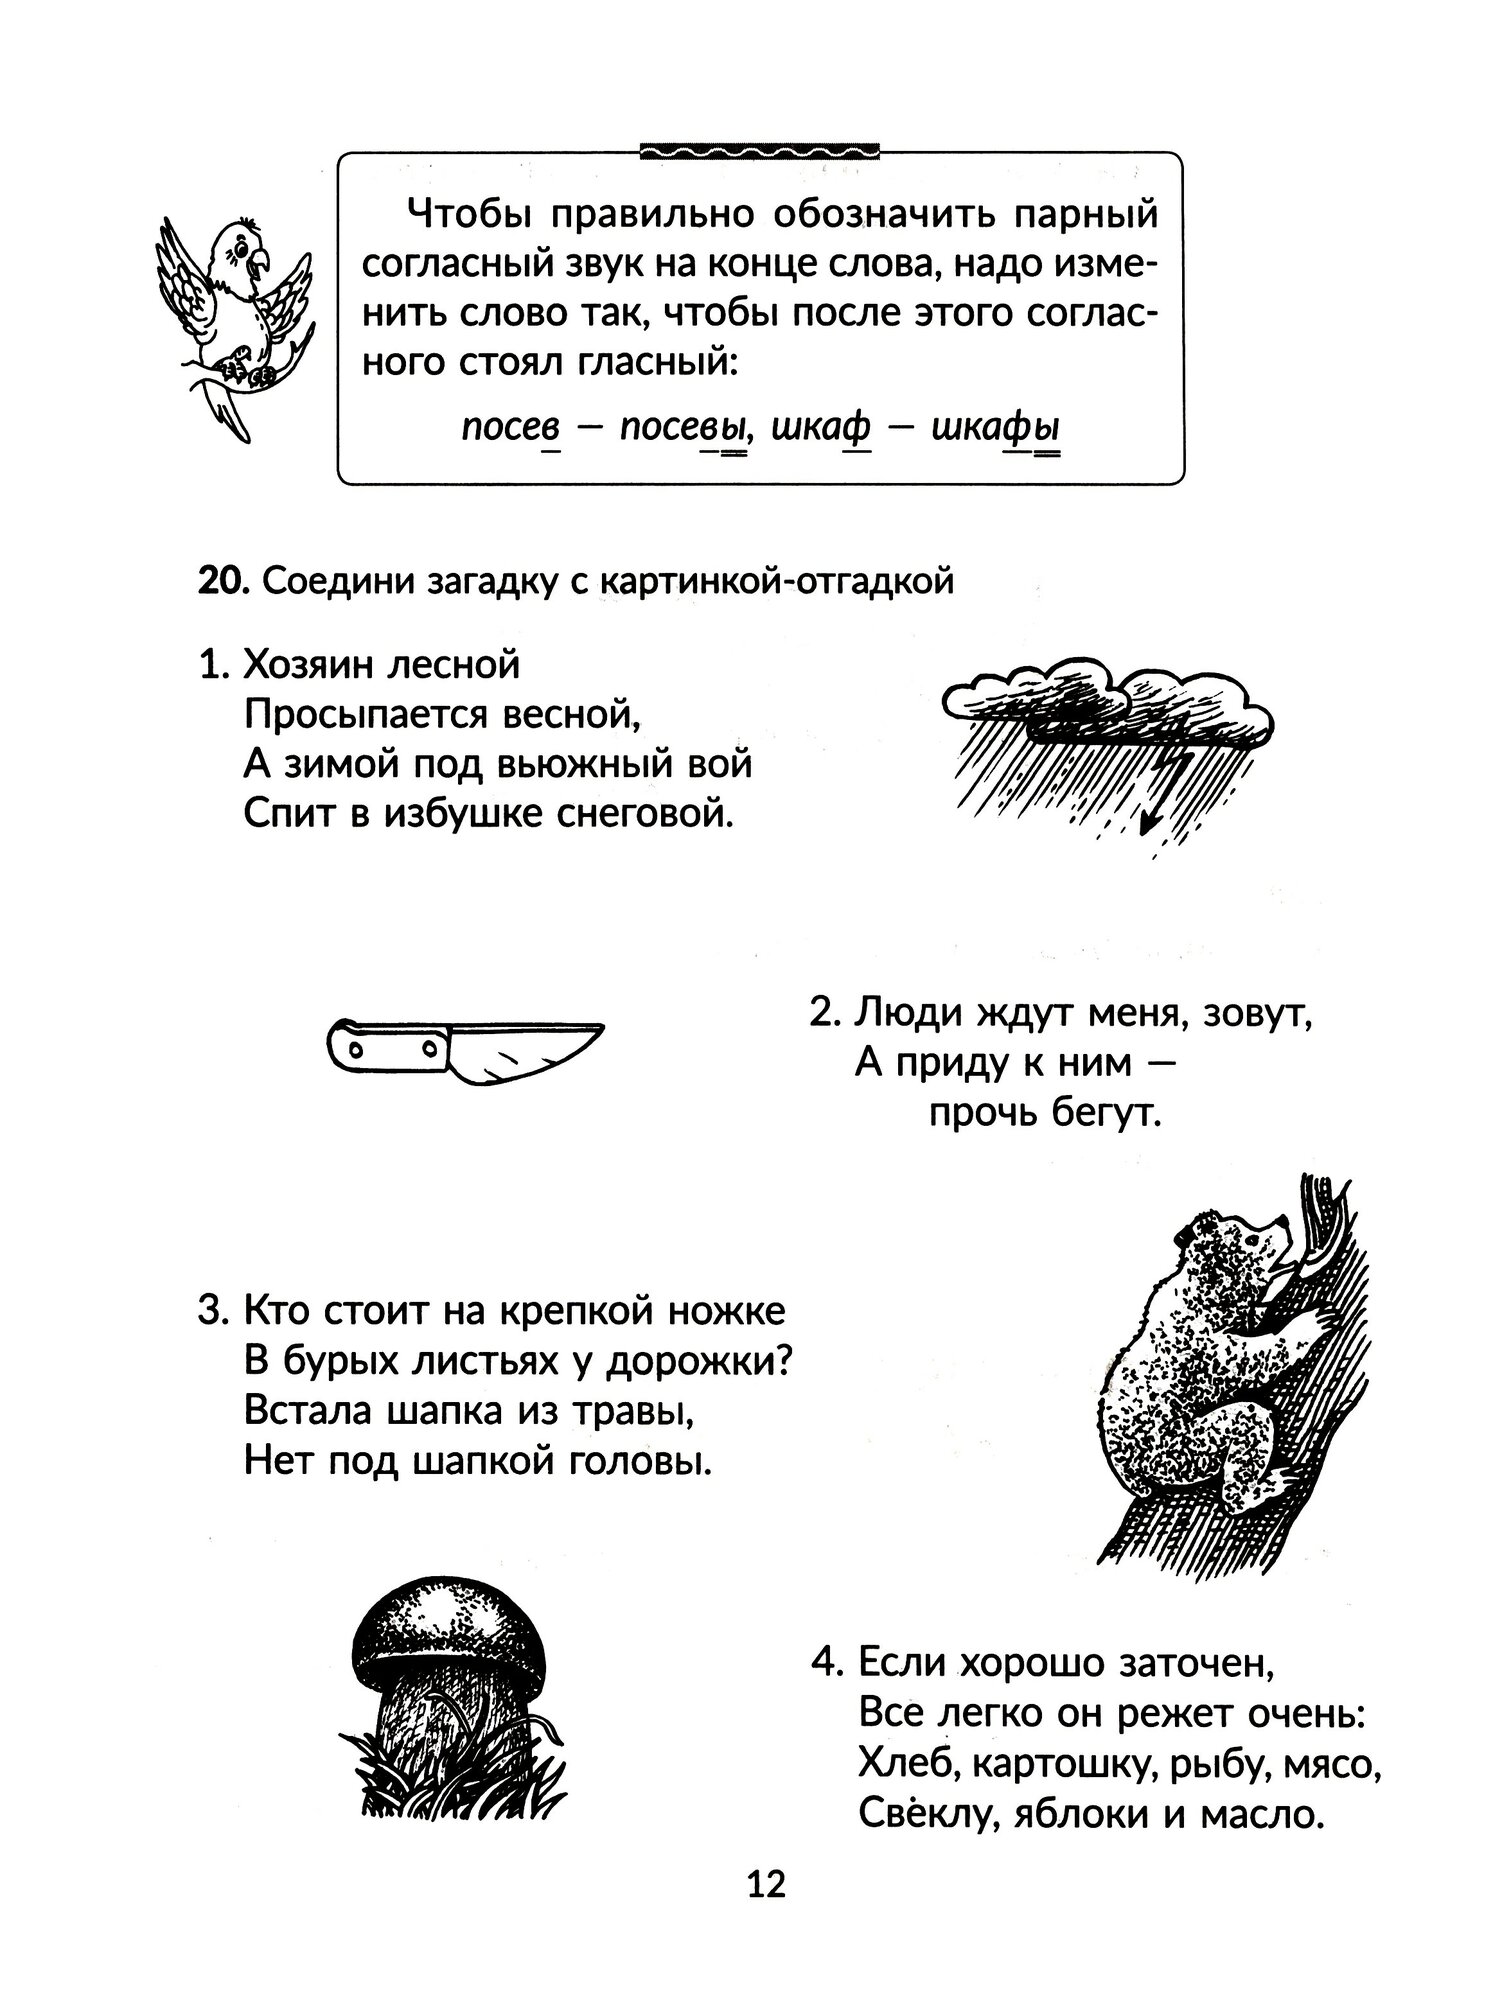 Тренажёр по чистописанию с правилами русского языка, проверочными диктантами. 1-4 классы - фото №2